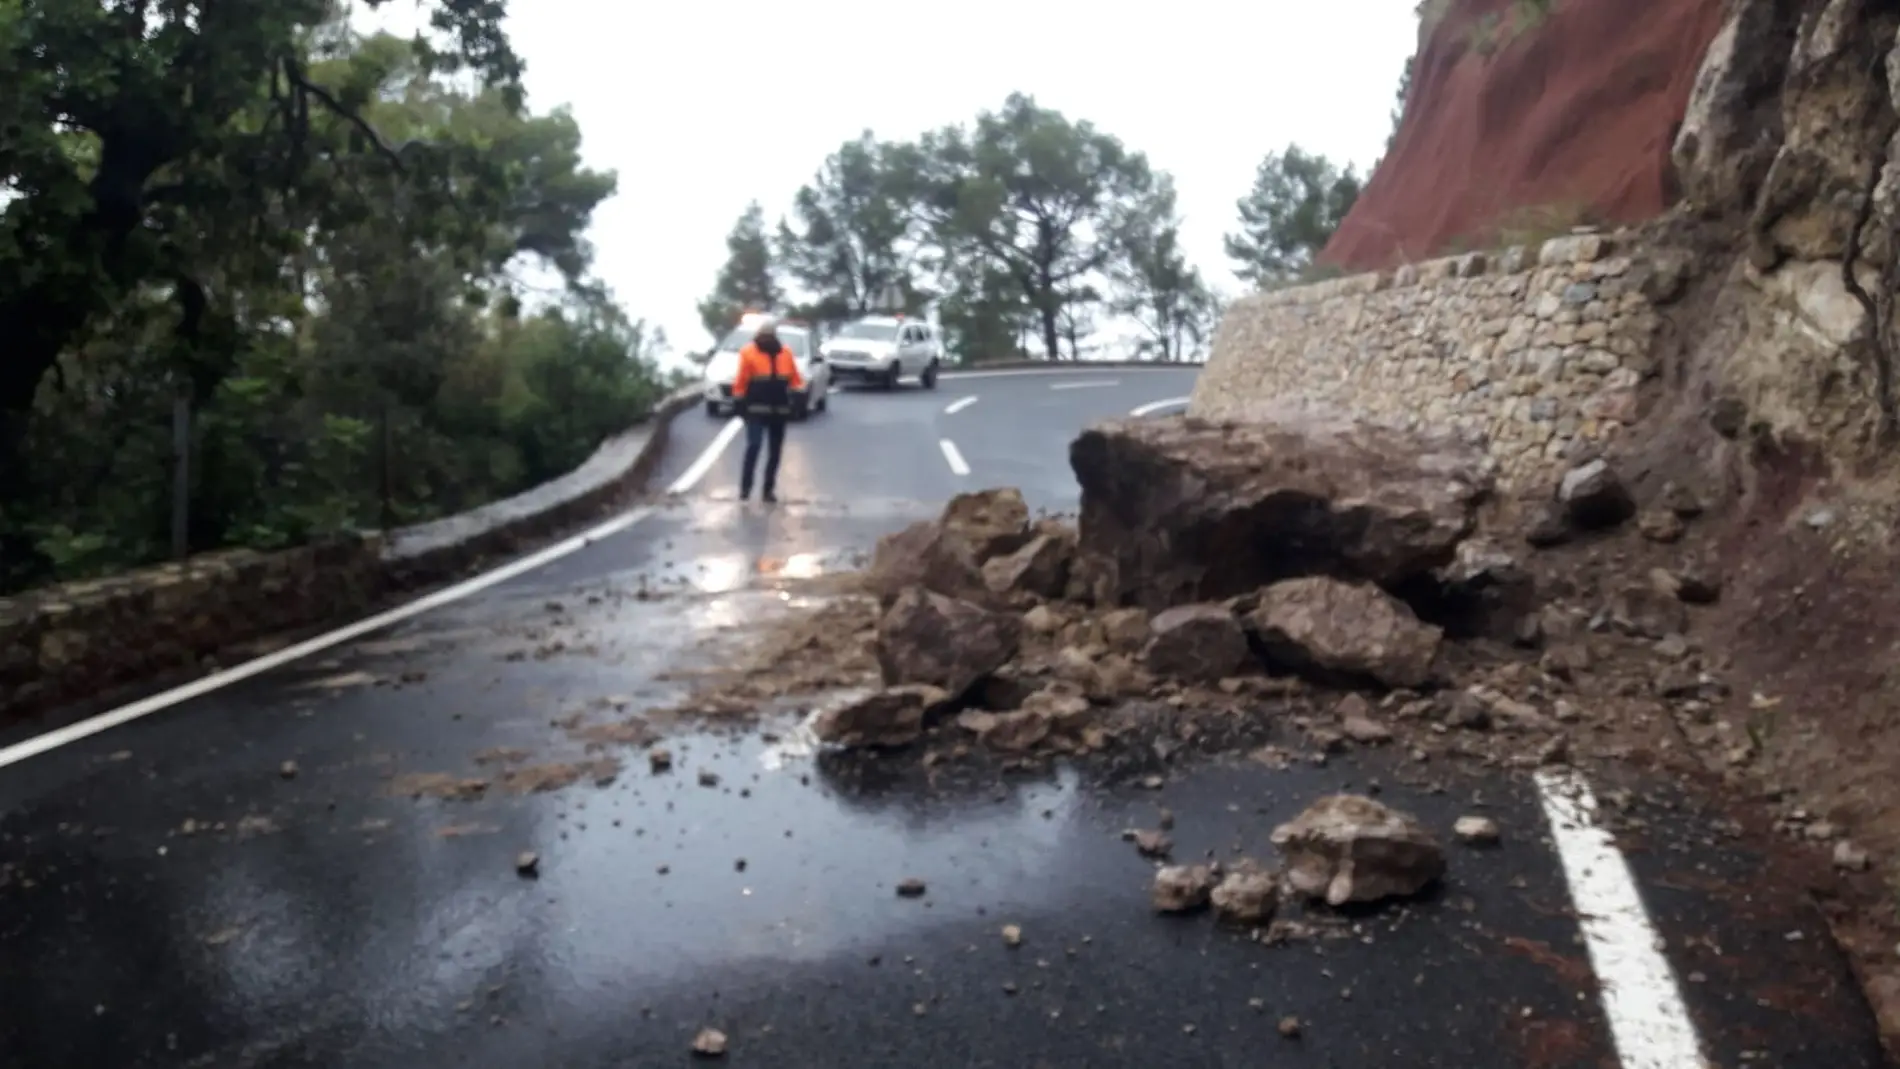 El temporal ha provocado desprendimientos en algunas carreteras de Mallorca